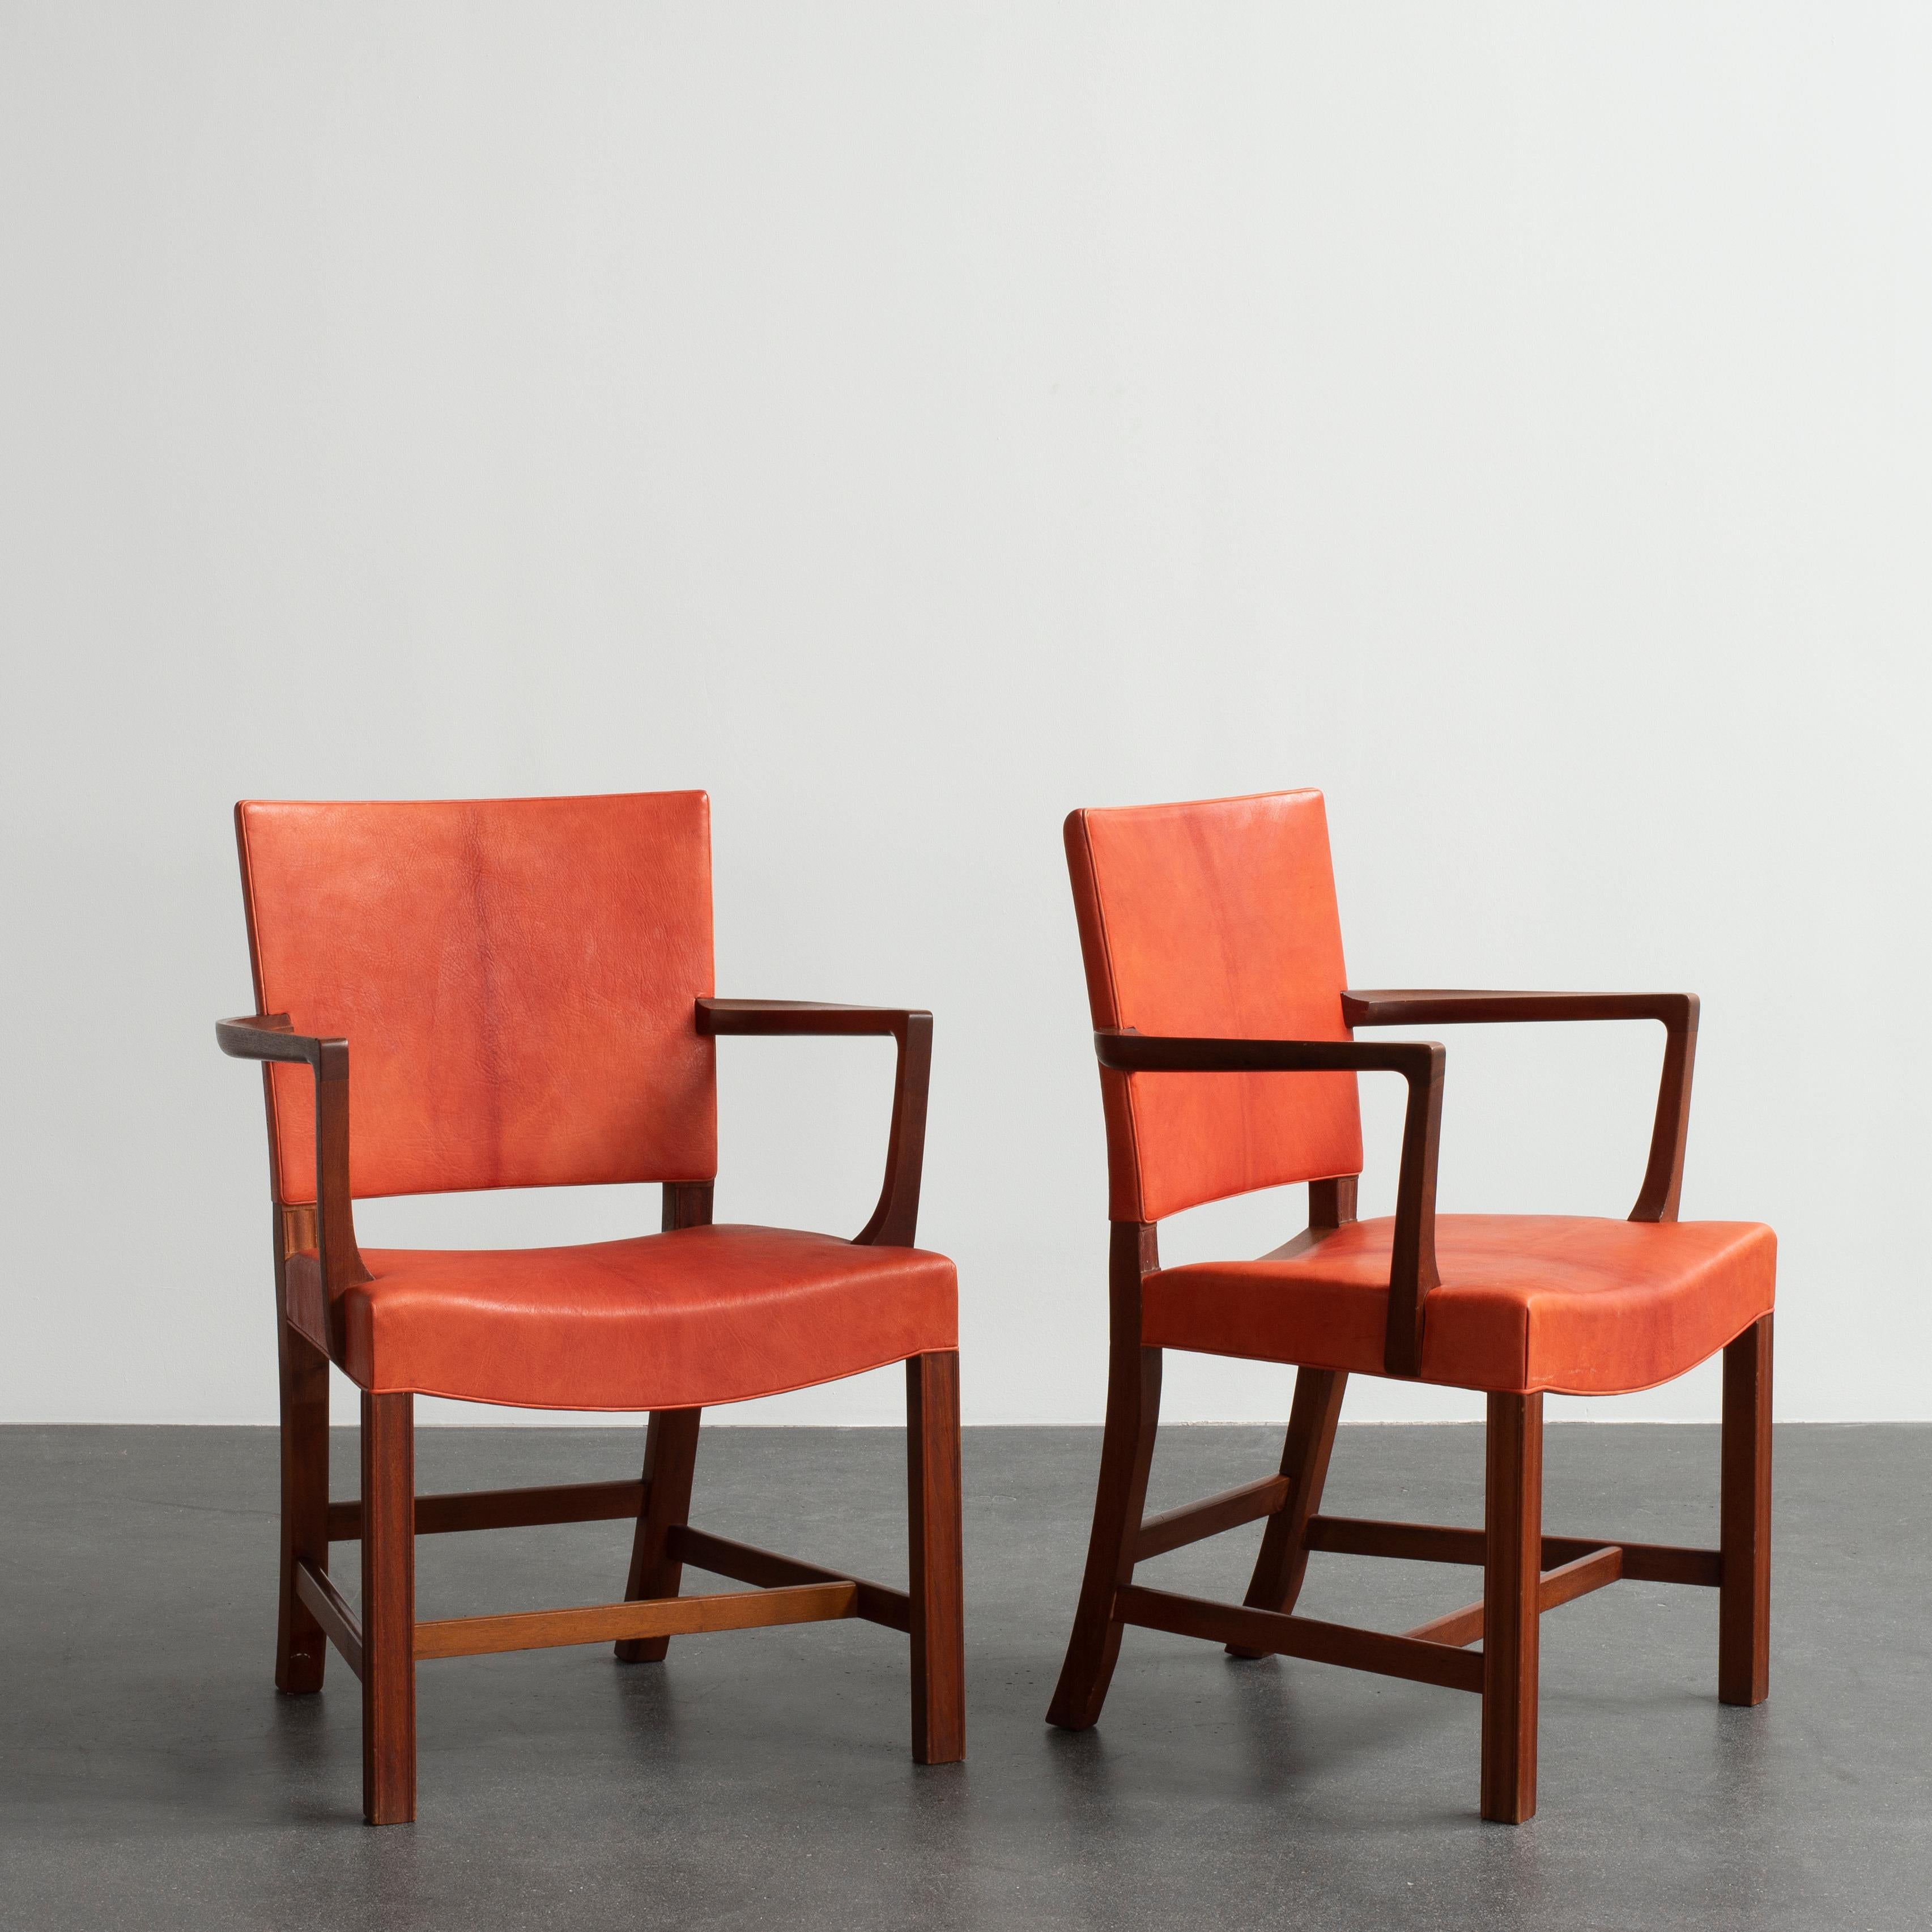 Kaare Klint pair of armchairs in teak and Niger leather. Executed by Rud. Rasmussen.

Reverse with paper label ‘RUD. RASMUSSEN/SNEDKERIER/45 NØRREBROGADE/KØBENHAVN.